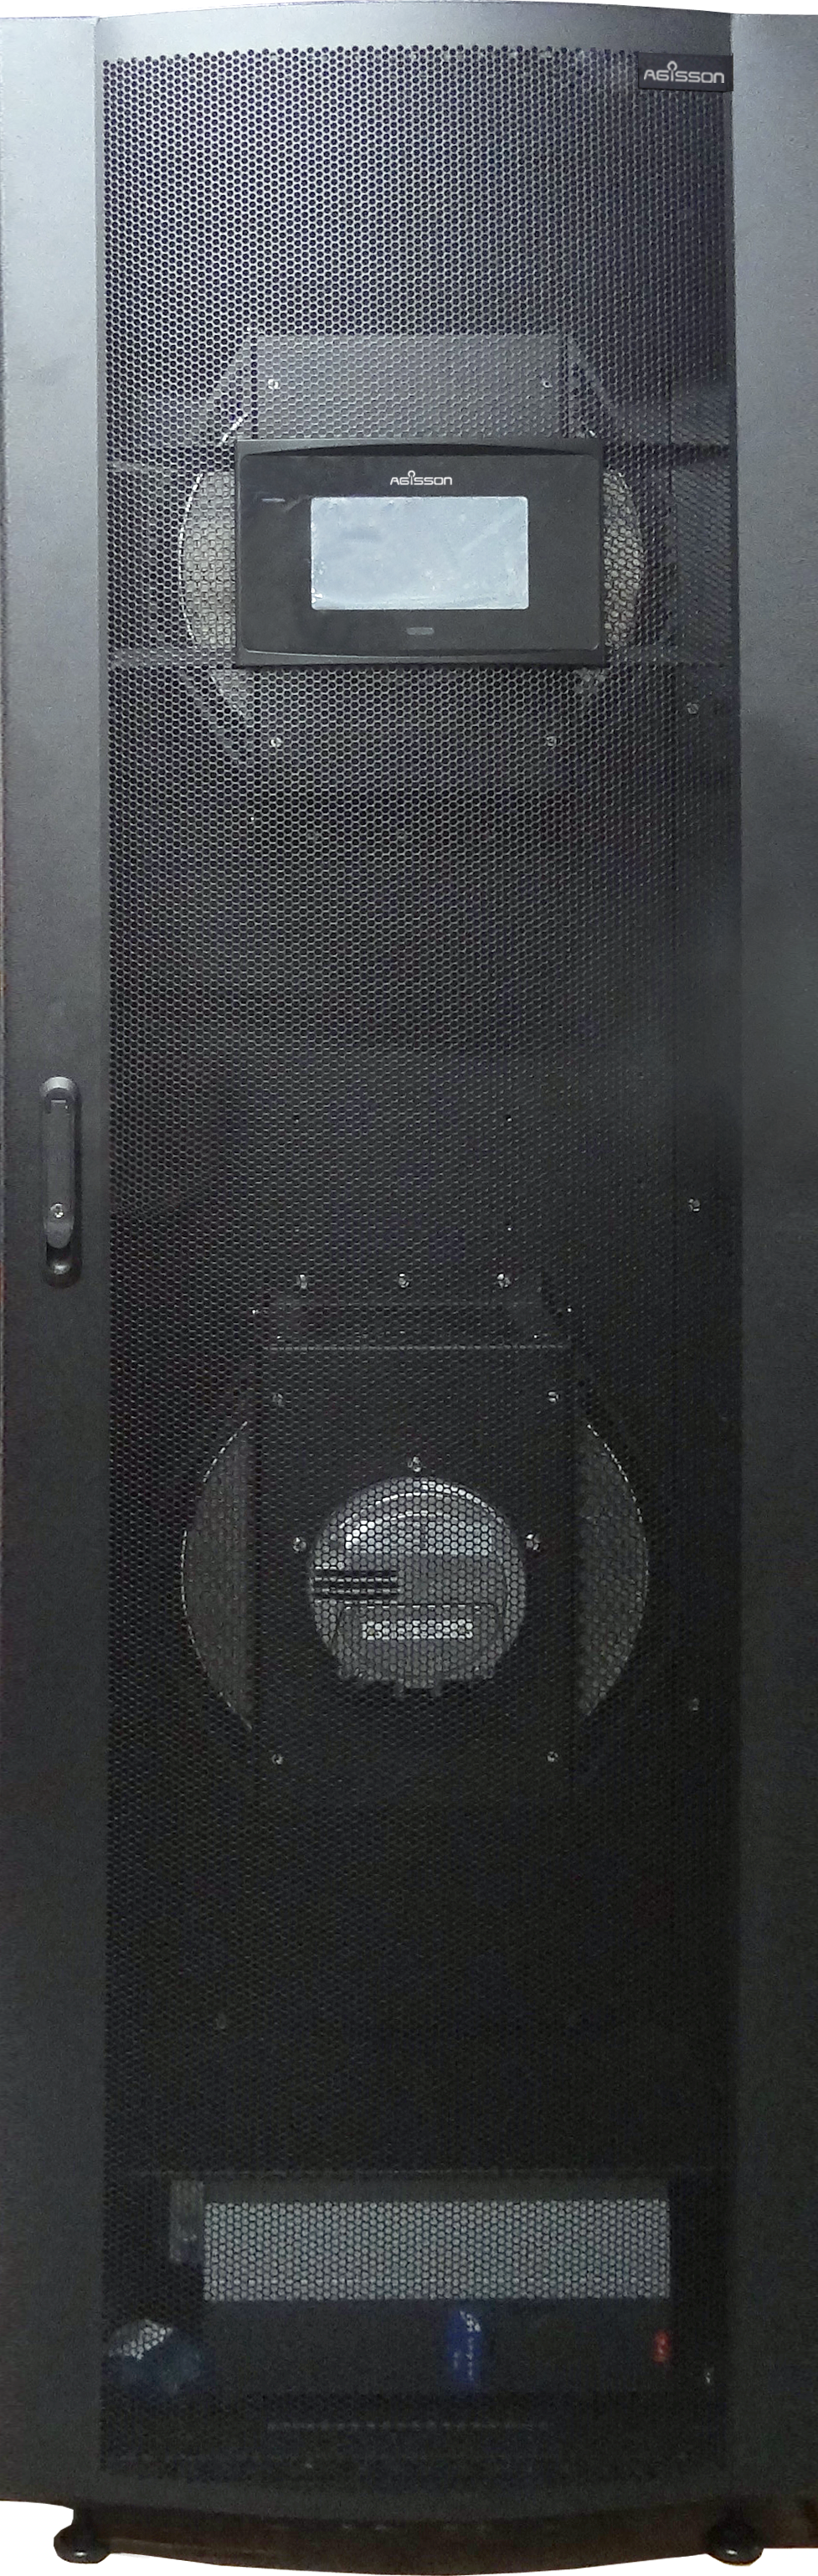 华为——NetCol5000-A行级风冷智能温控产品